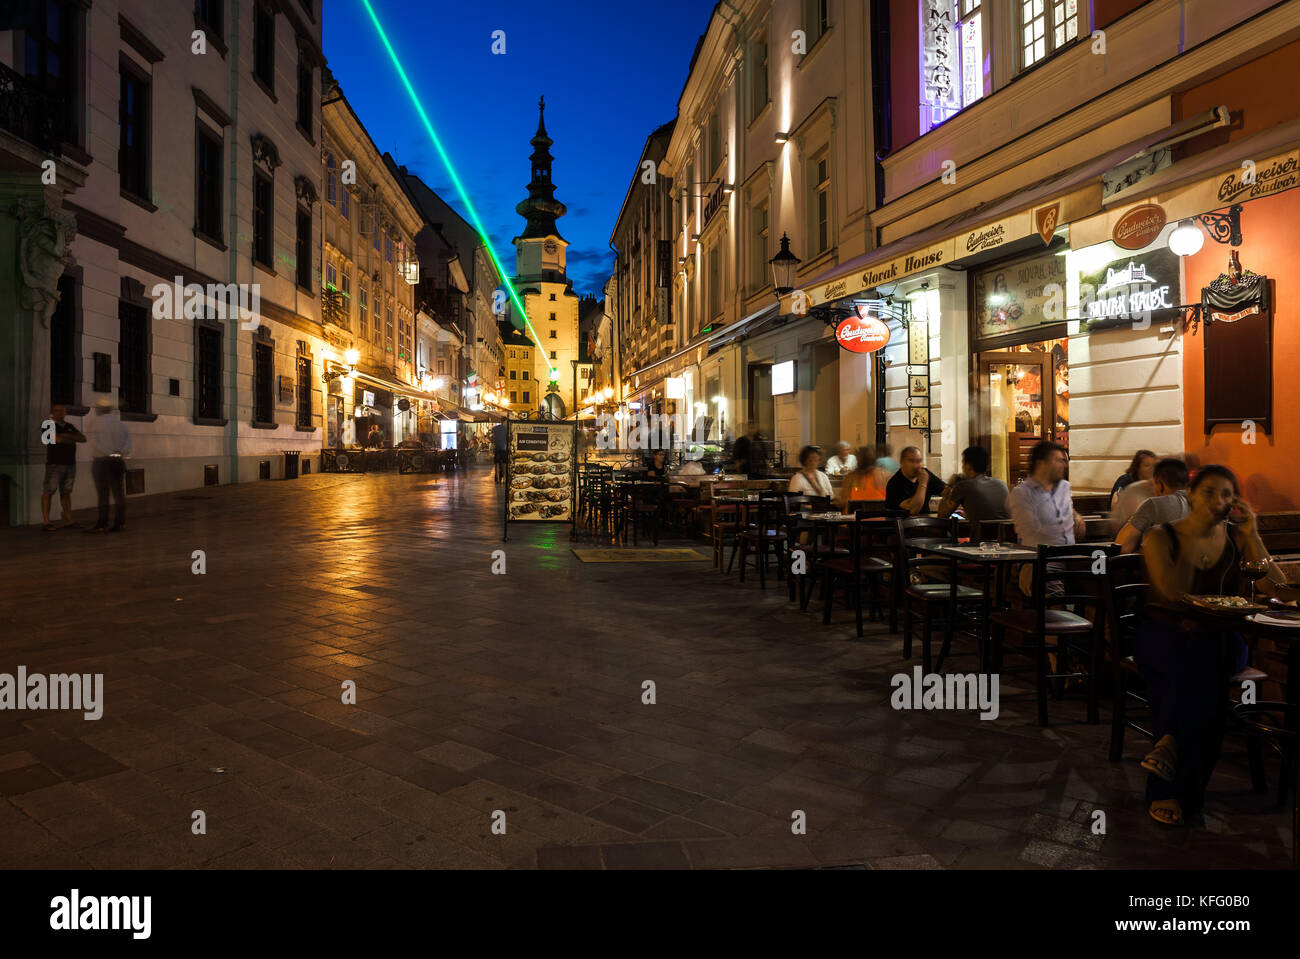 Die Slowakei, Bratislava, Altstadt bei Nacht, Cafe Restaurant slowakische Hause auf Michalska Straße, Städtetrip, Blick Richtung Michael's Gate und Turm Stockfoto